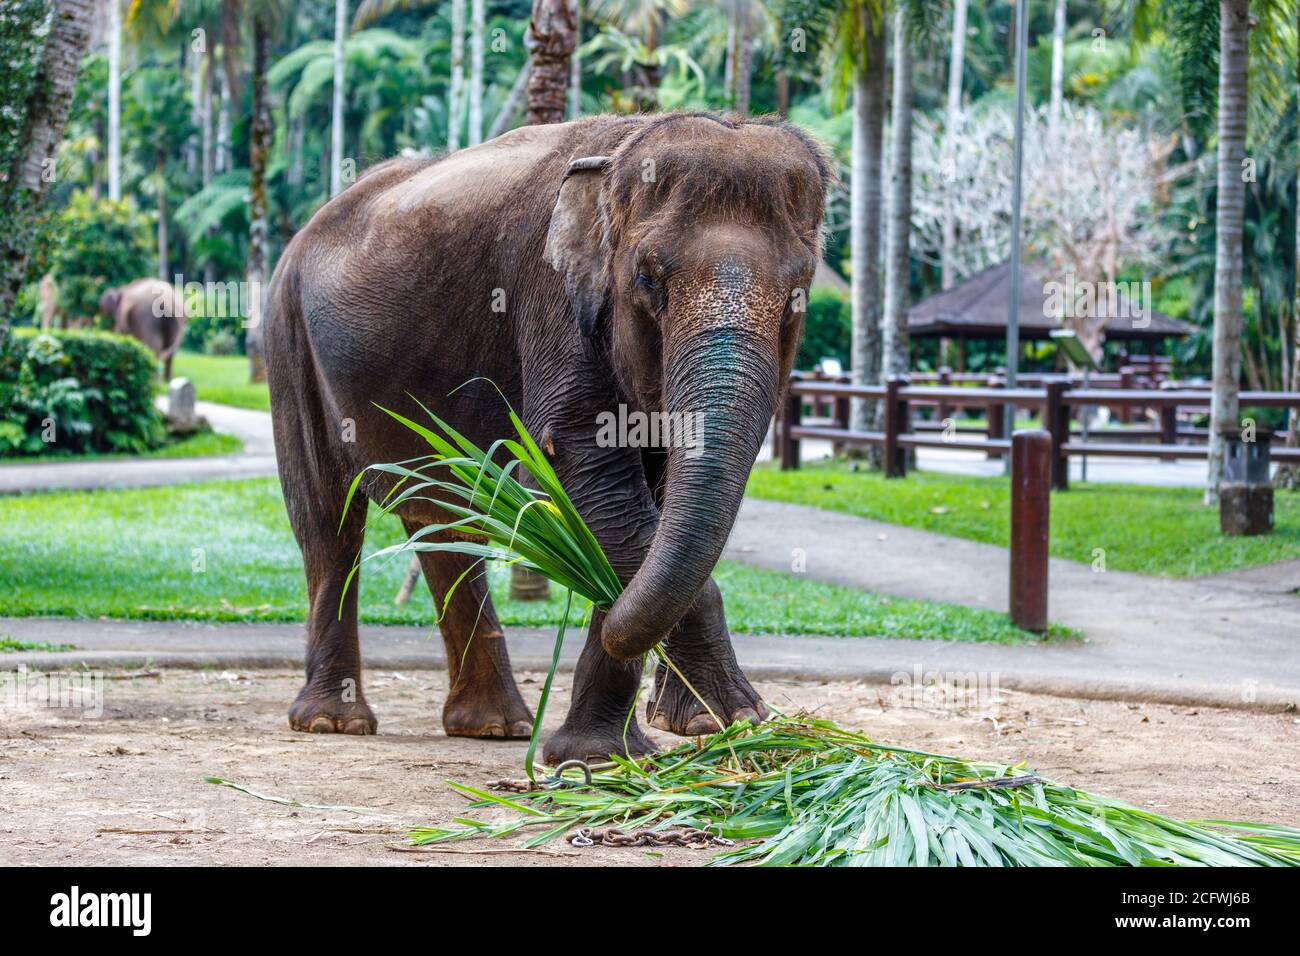 Éléphant de Sumatran en danger critique dans un parc. Bali, Indonésie Banque D'Images